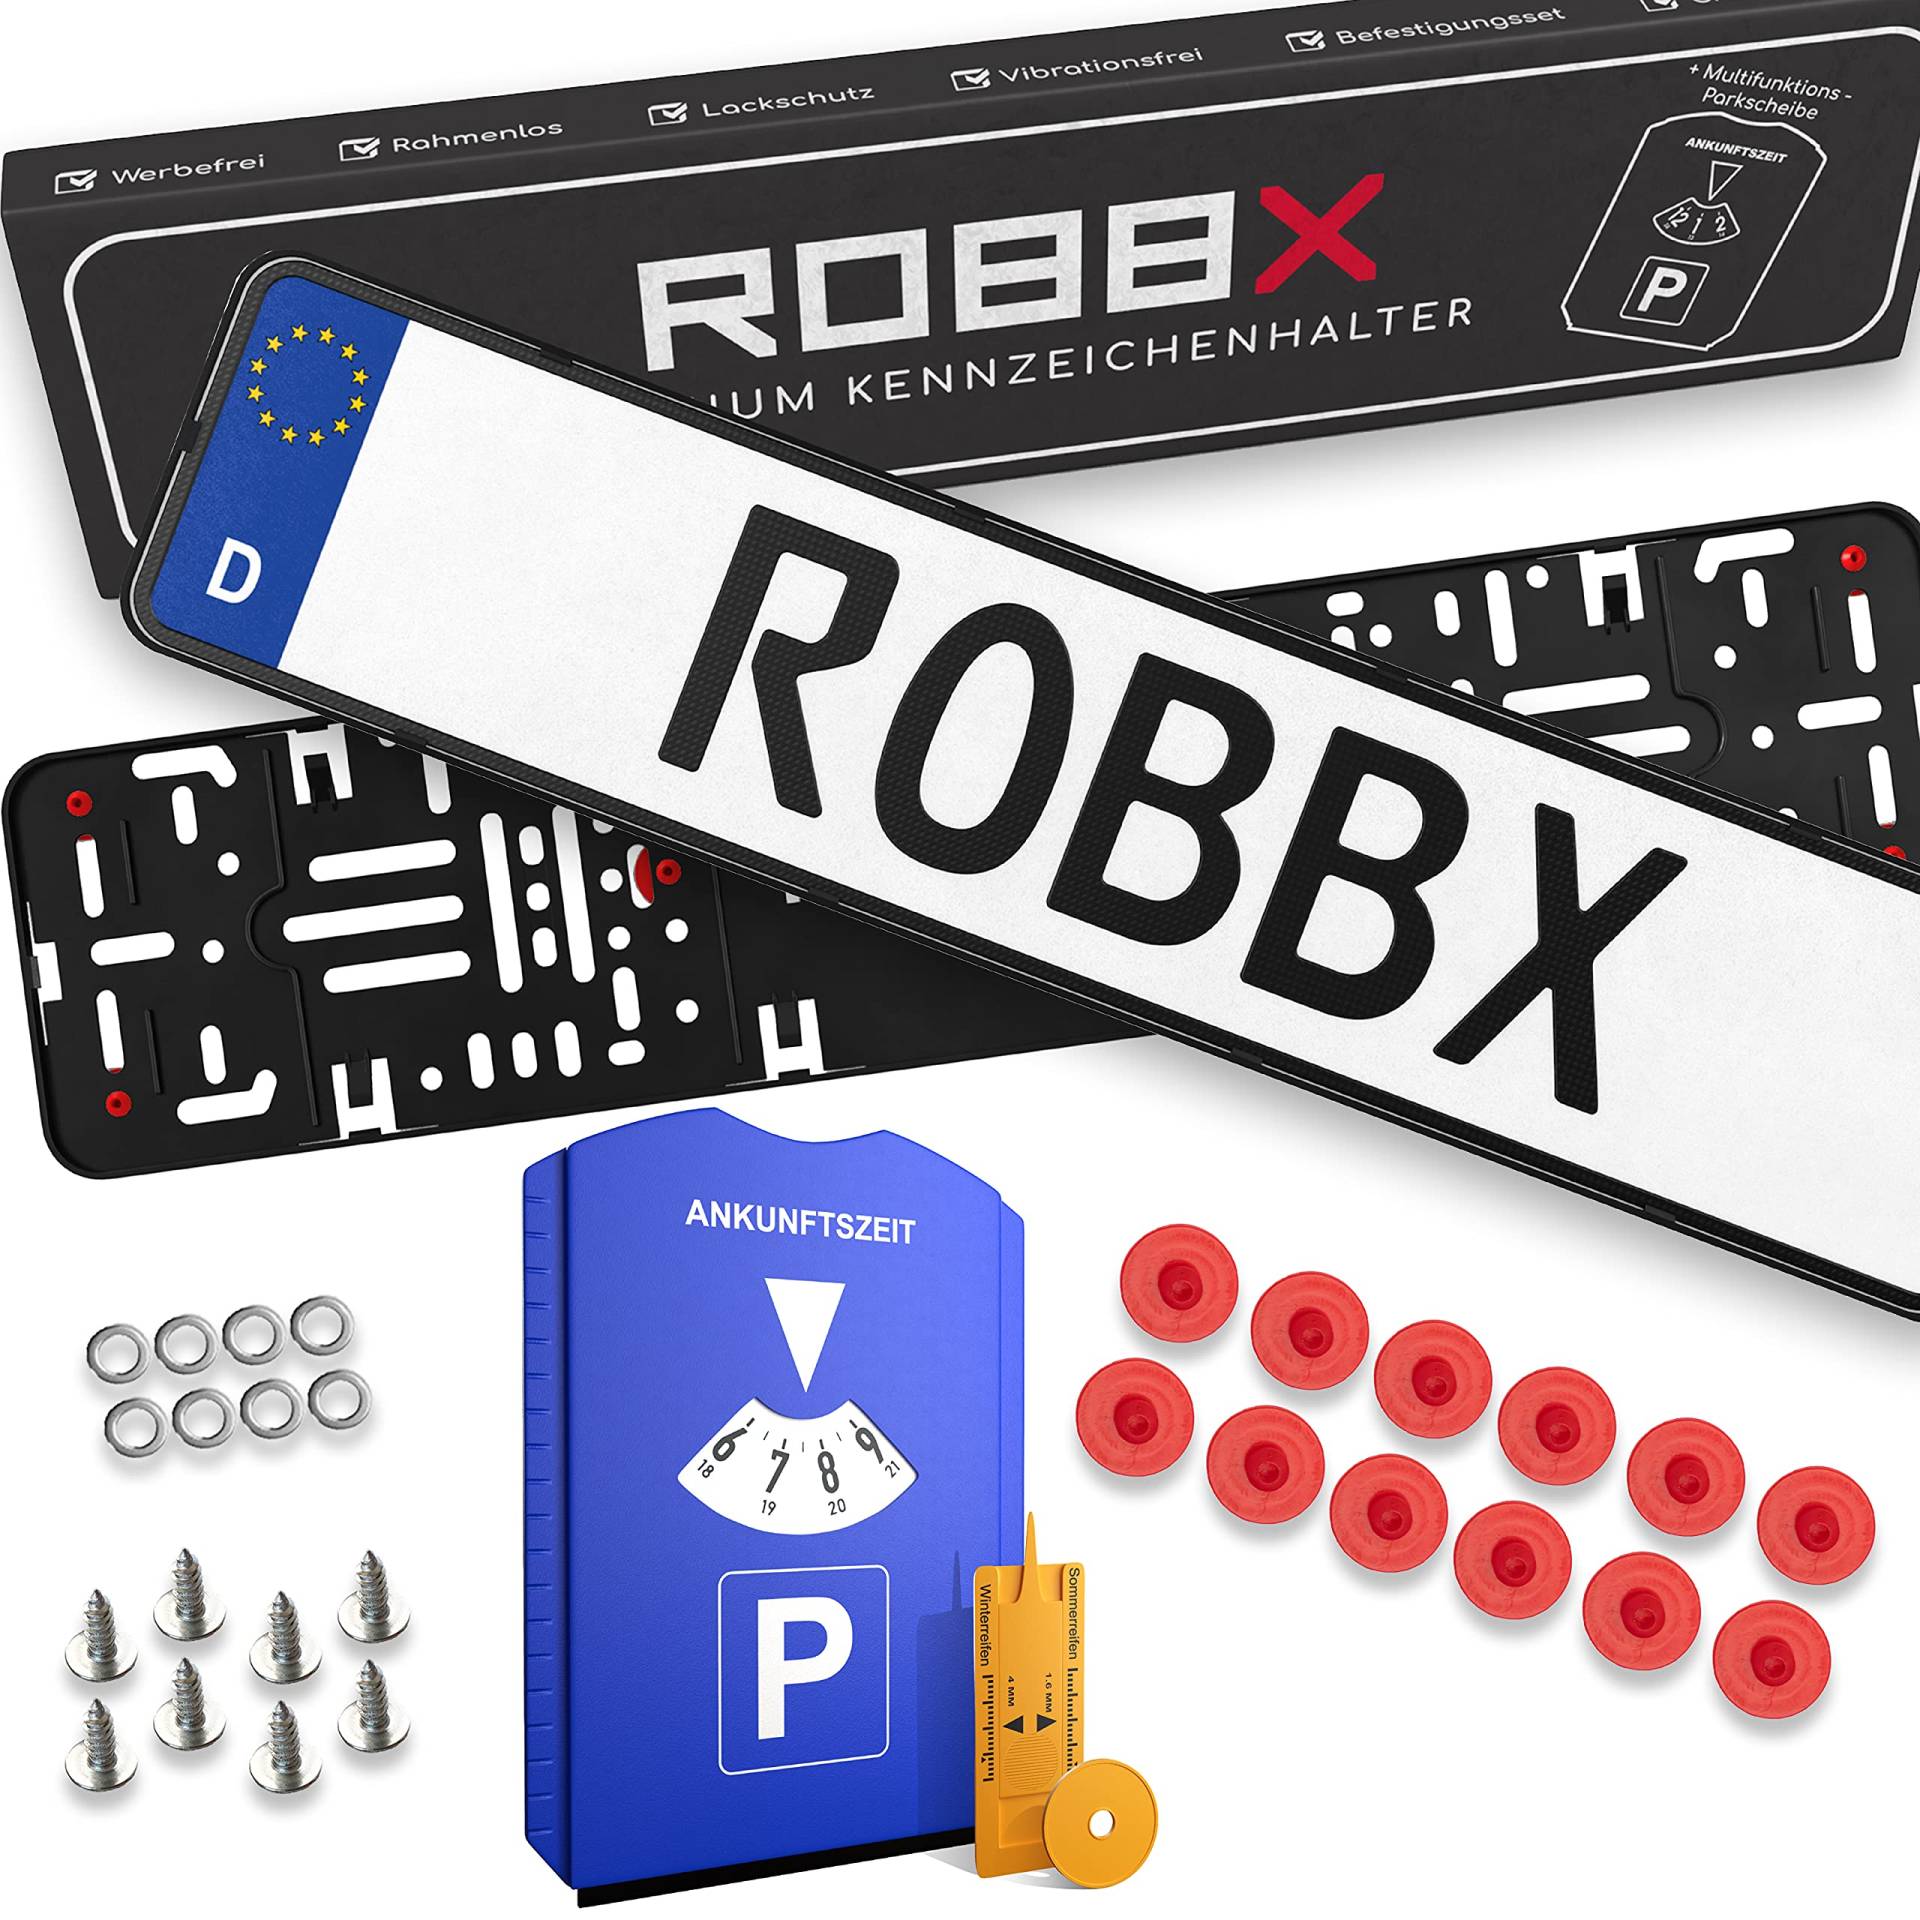 ROBBX® 2X Rahmenlose Auto Kennzeichenhalter | Vibrationsdämpfer für Lackschutz | 5 in1 Parkscheibe | Befestigungskit | Nummernschildhalter werbefrei von ROBBX